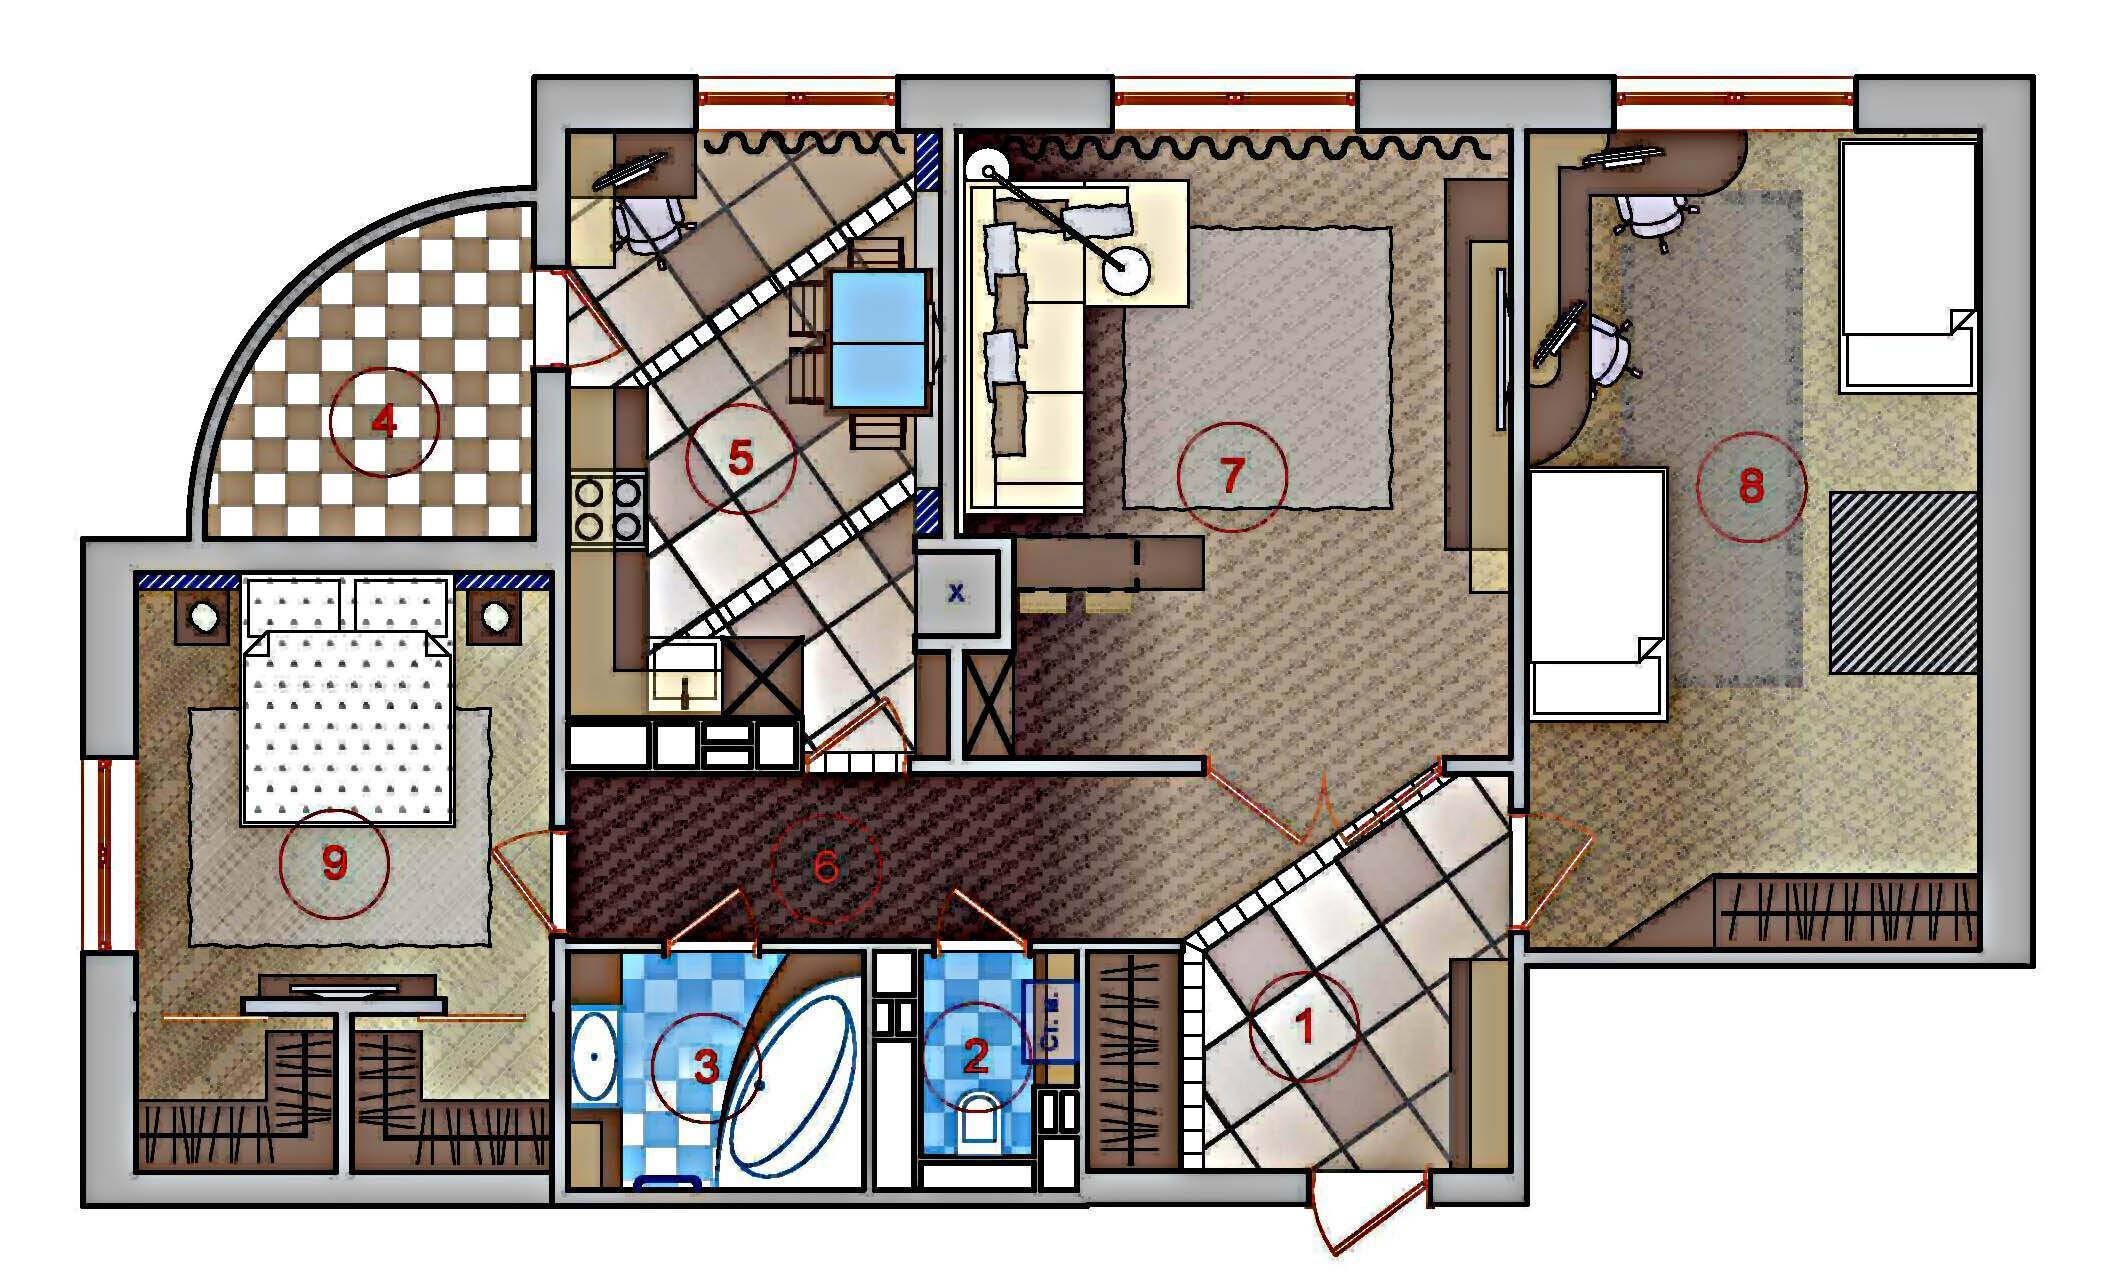 Варианты перепланировки квартир (20 шт): 1,2,3,4 комнатных